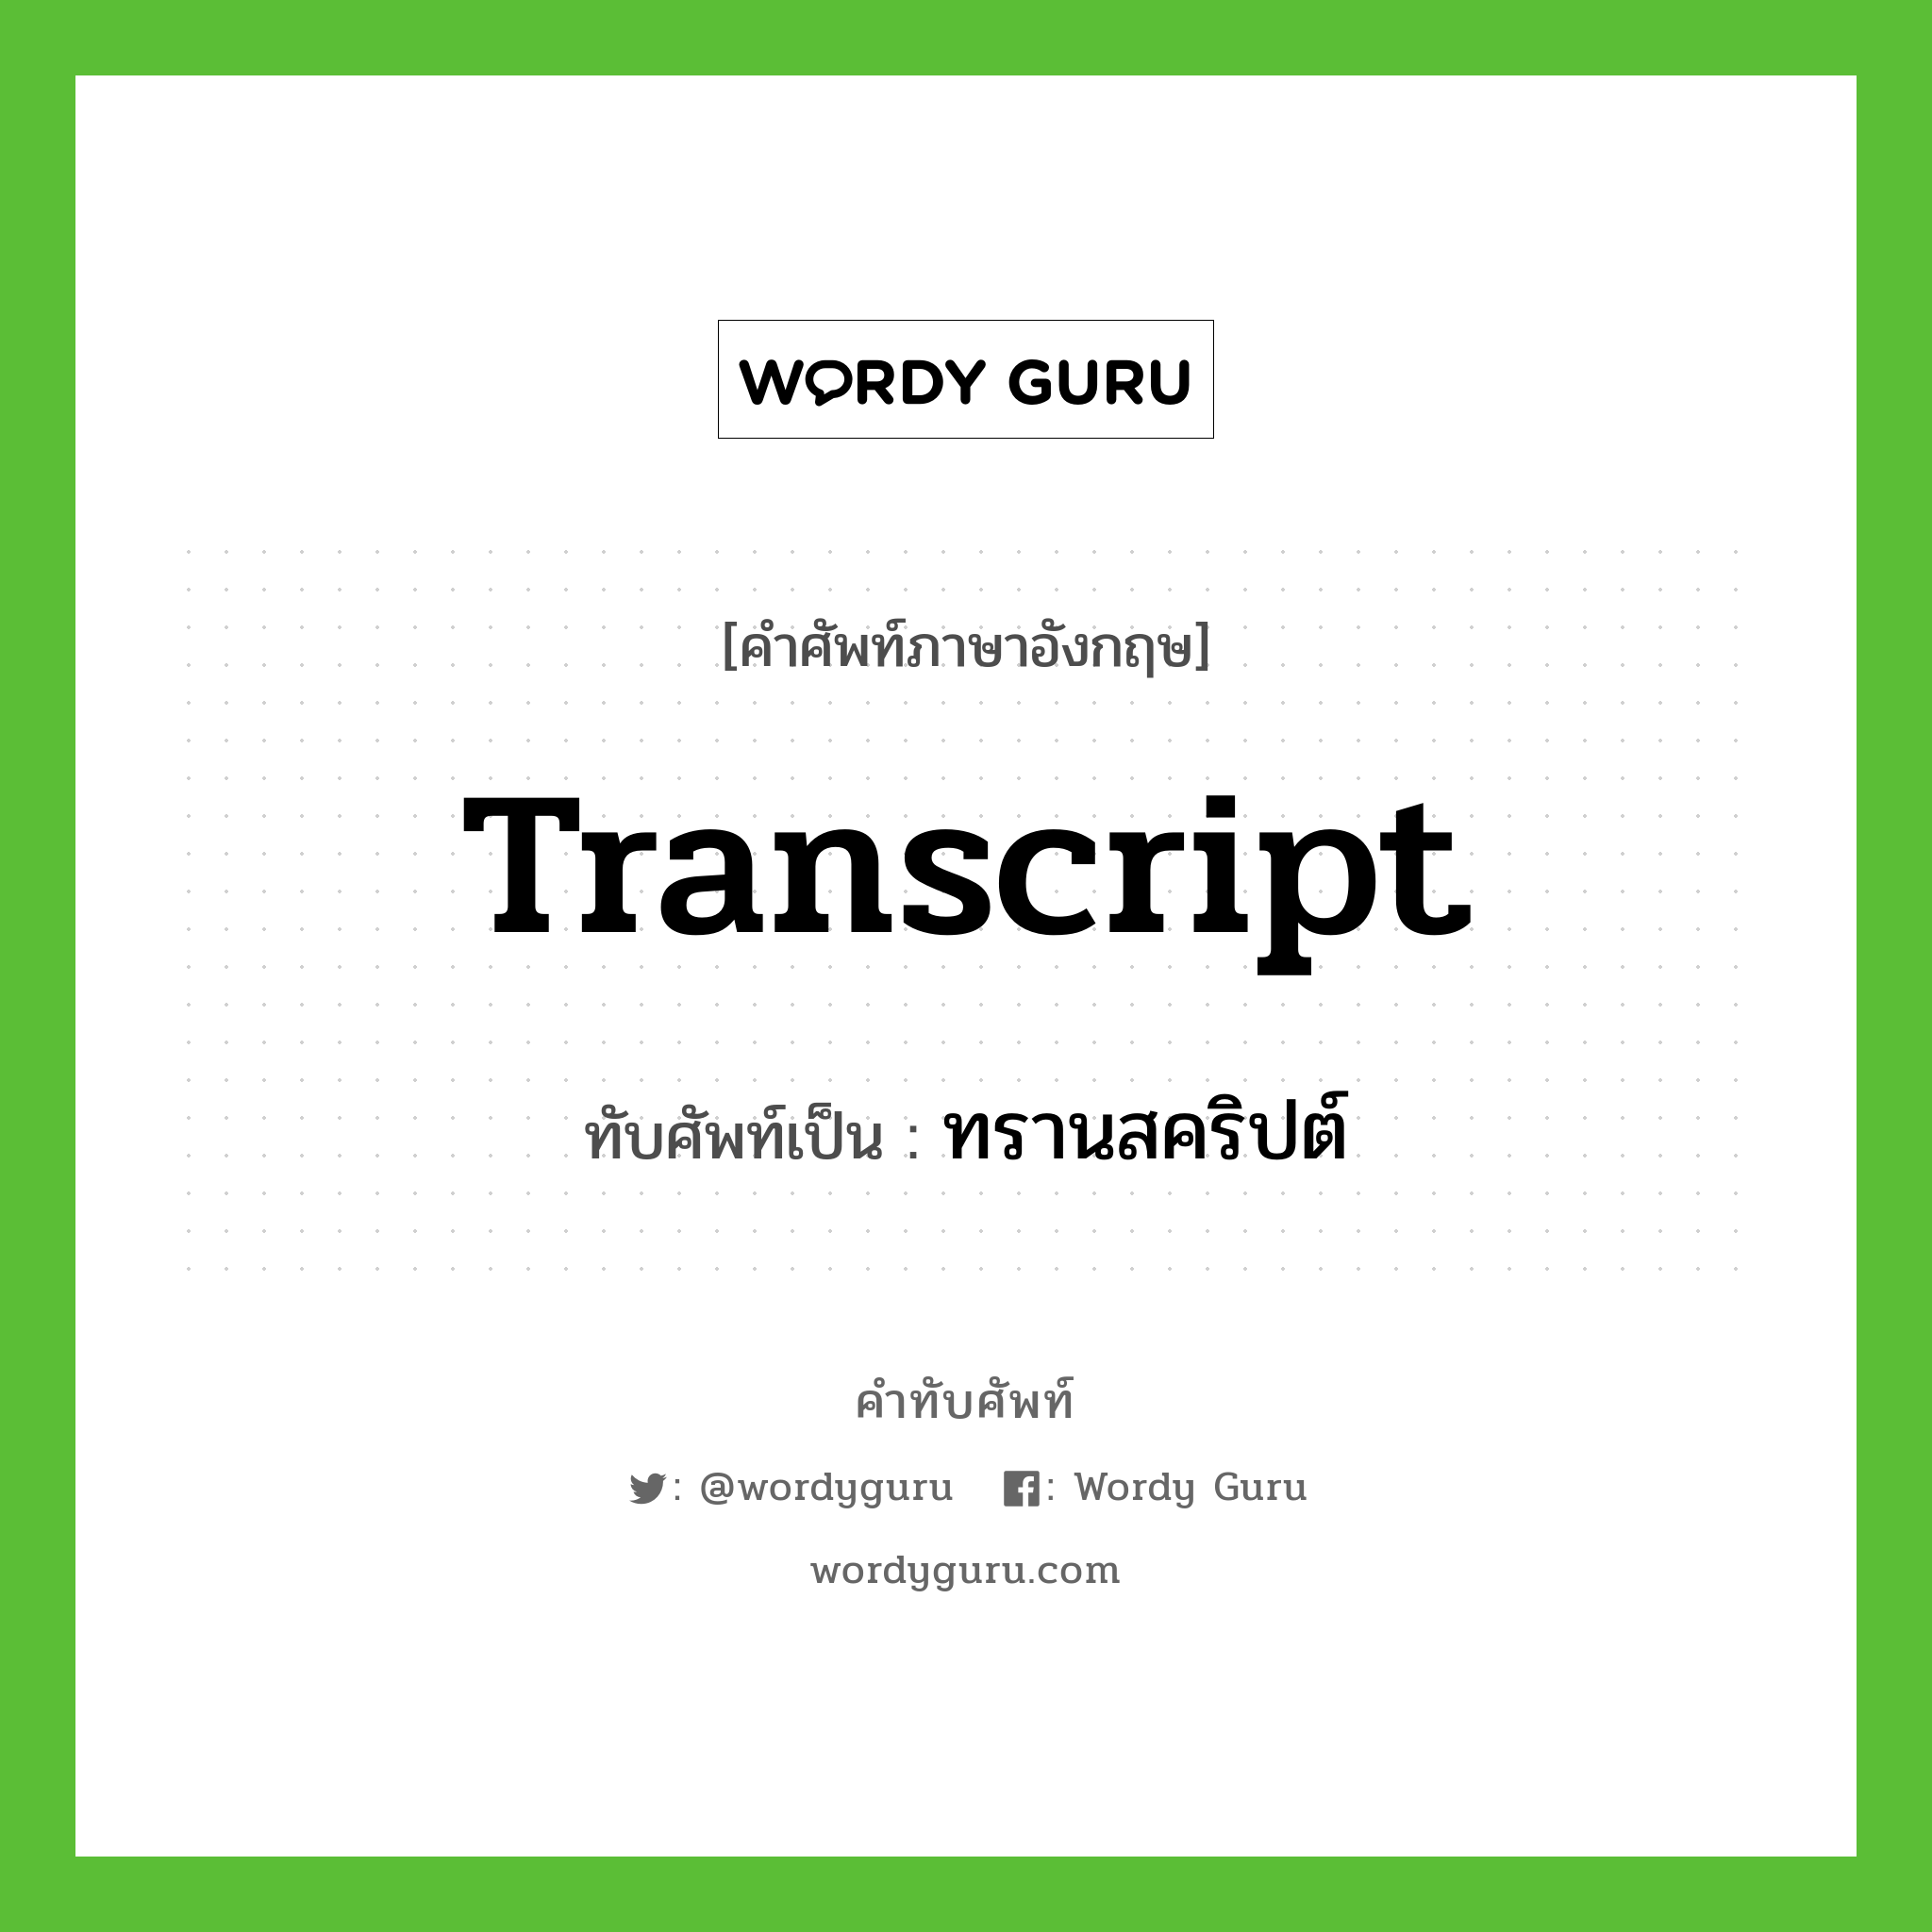 transcript เขียนเป็นคำไทยว่าอะไร?, คำศัพท์ภาษาอังกฤษ transcript ทับศัพท์เป็น ทรานสคริปต์